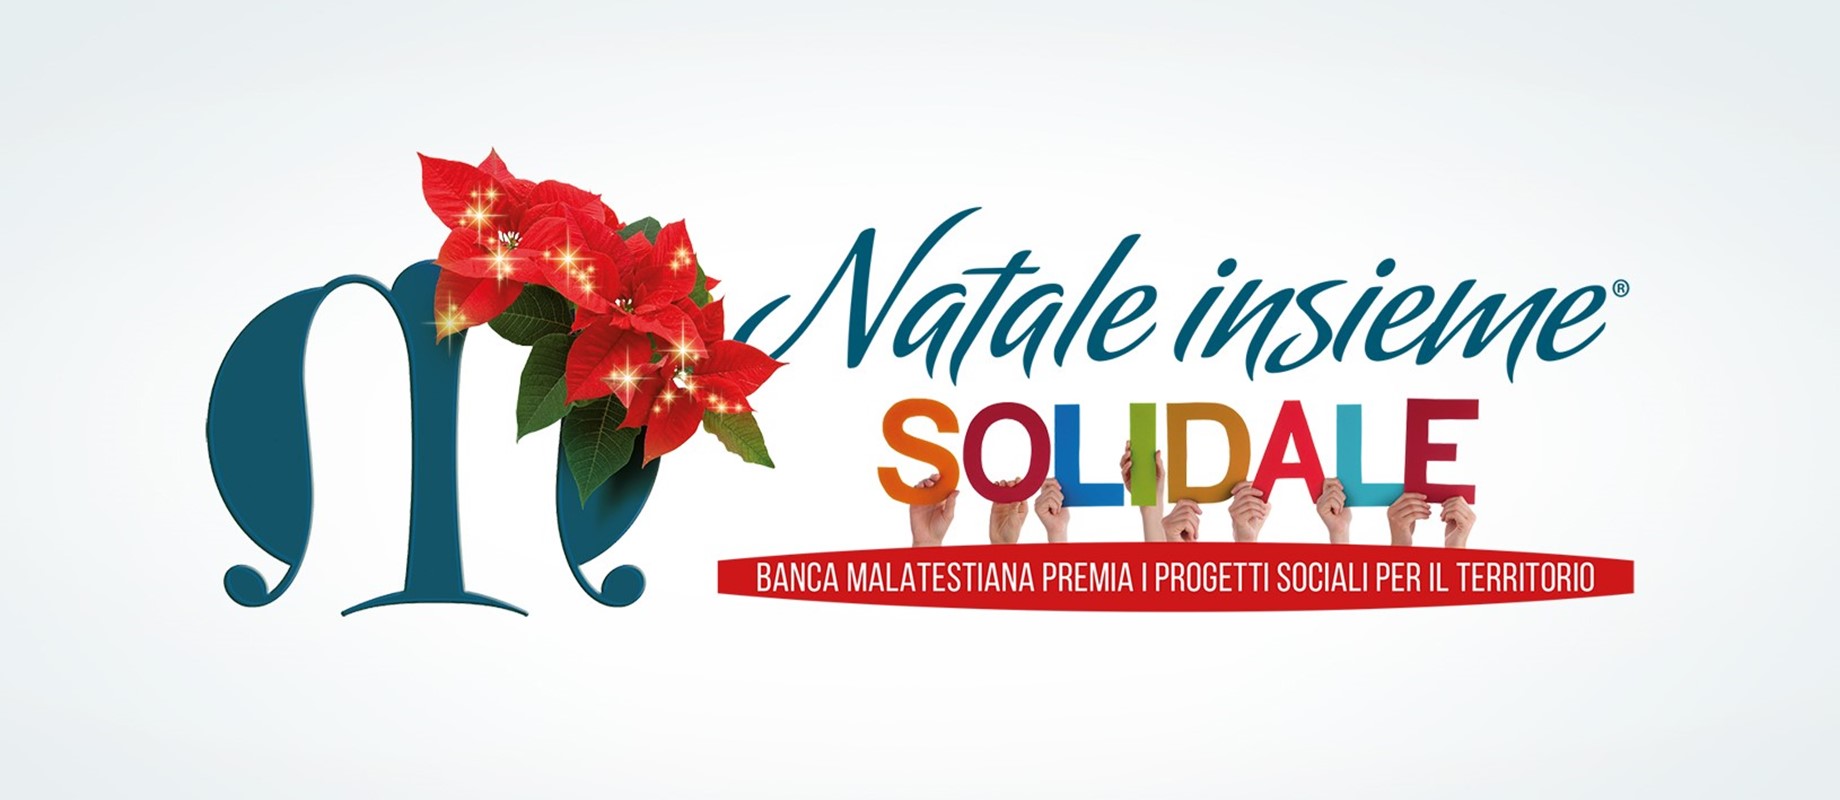 Si è conclusa la 3° edizione del Bando Natale Insieme Solidale 